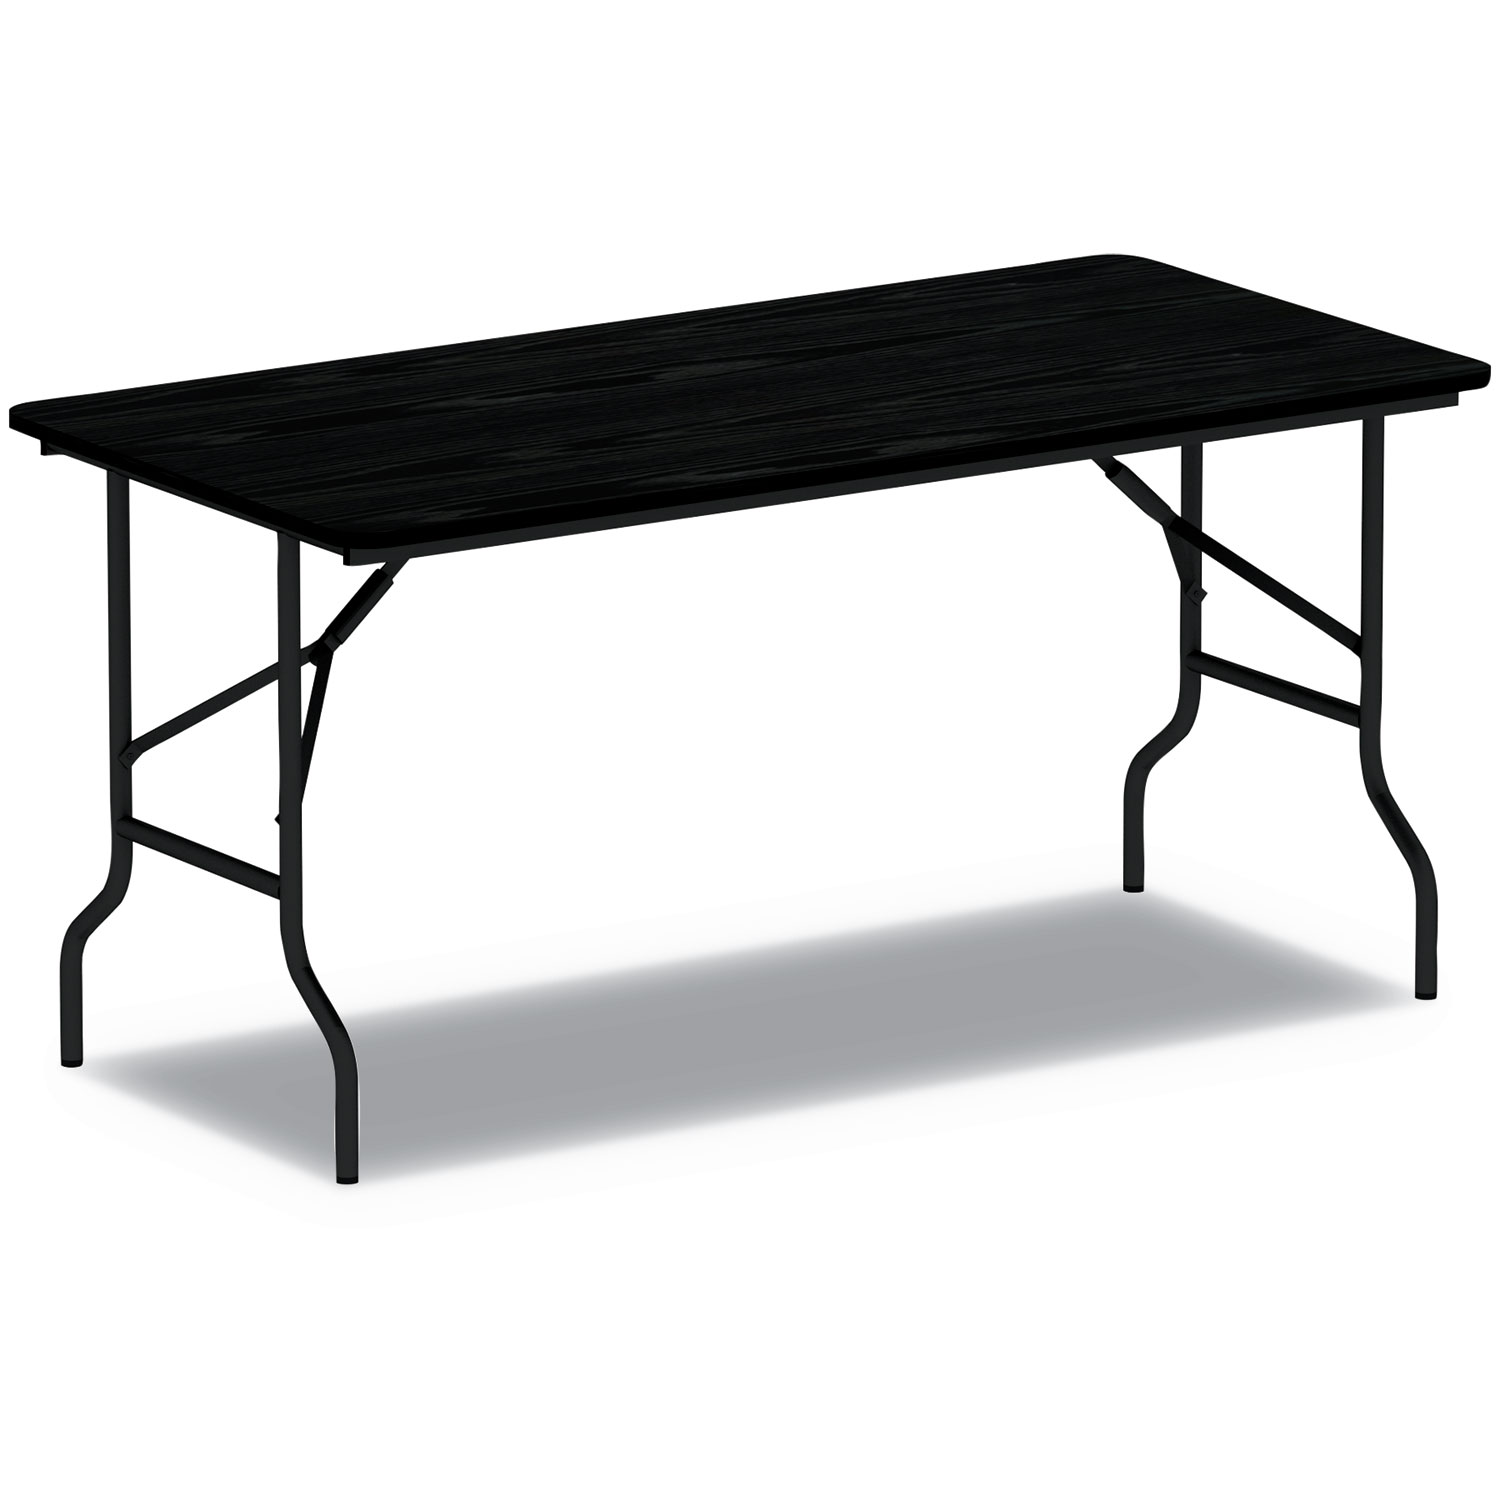  Alera ALEFT726018BK Wood Folding Table, 59 7/8w x 17 3/4d x 29 1/8h, Black (ALEFT726018BK) 